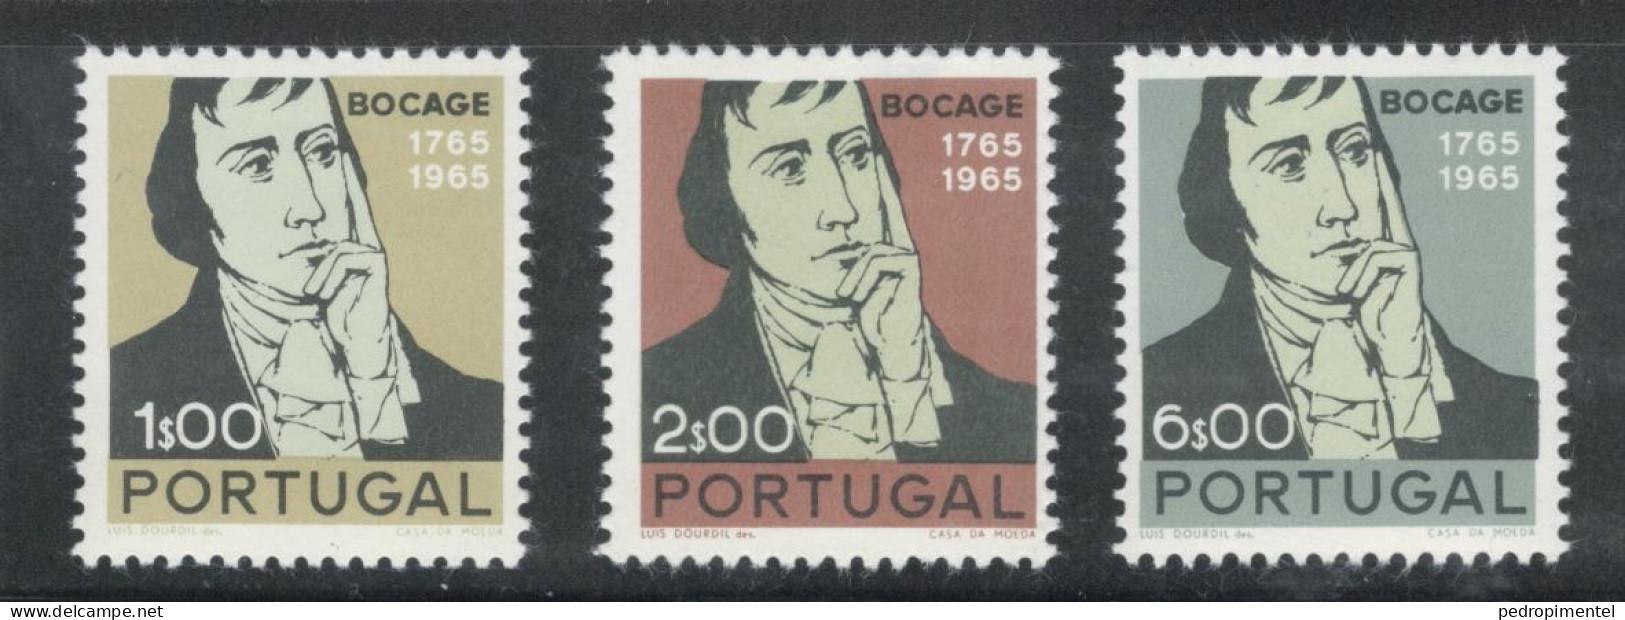 Portugal Stamps 1966 "Bocage" Condition MH OG #994-996 - Ongebruikt